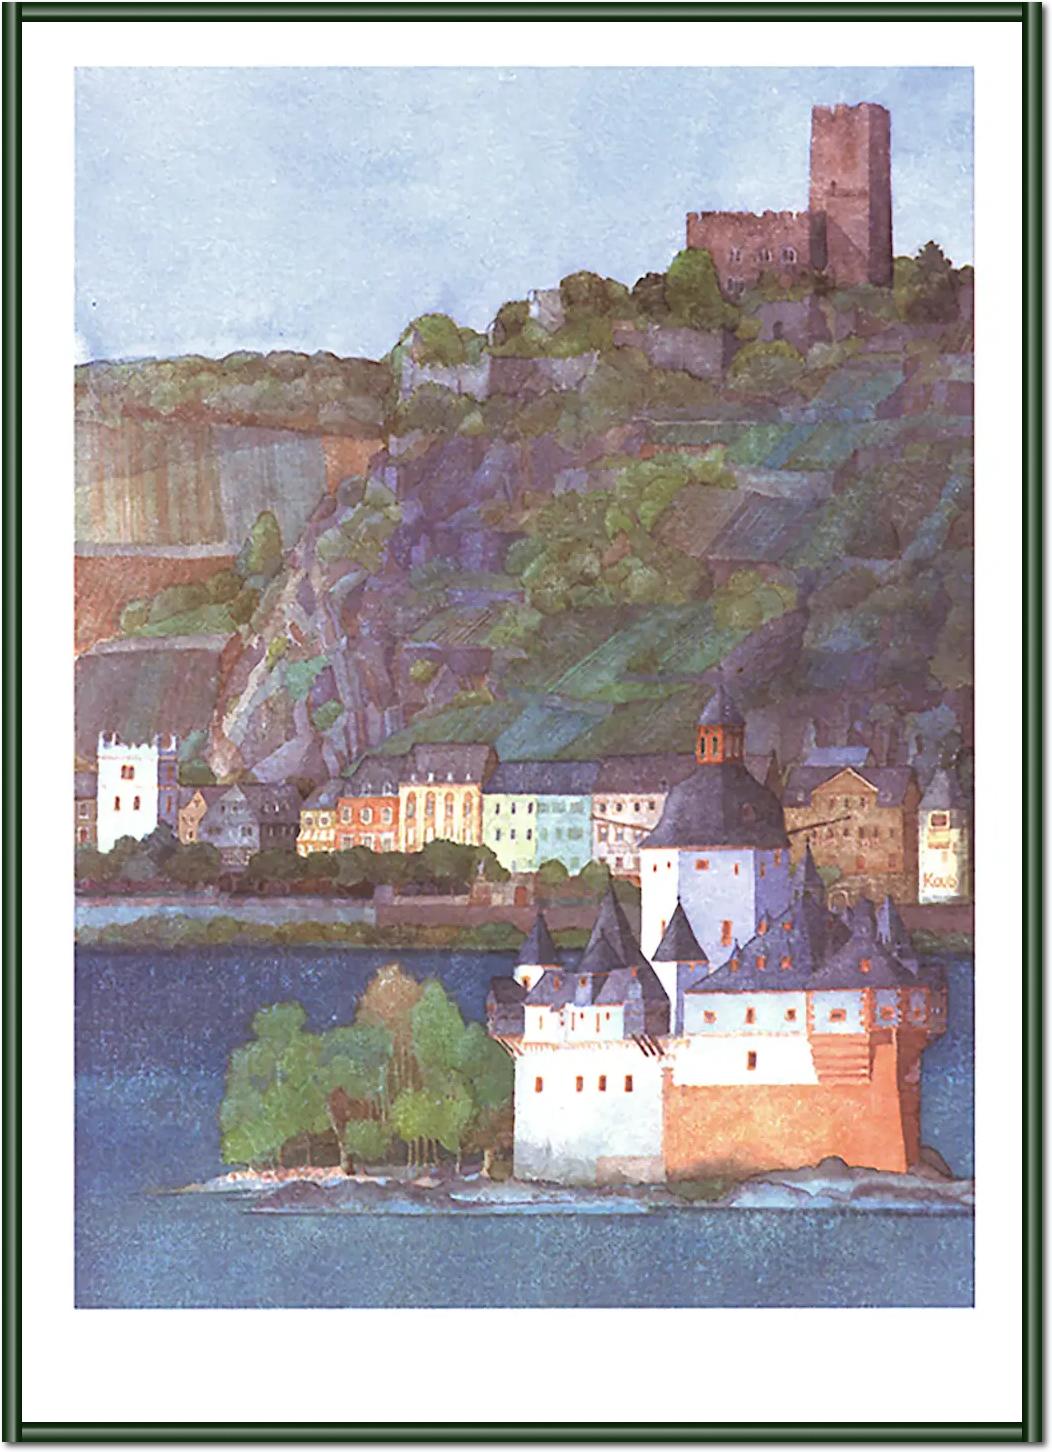 Die Pfalz bei Kaub und Burg Gutenfels, Rhein von Helga Westphal